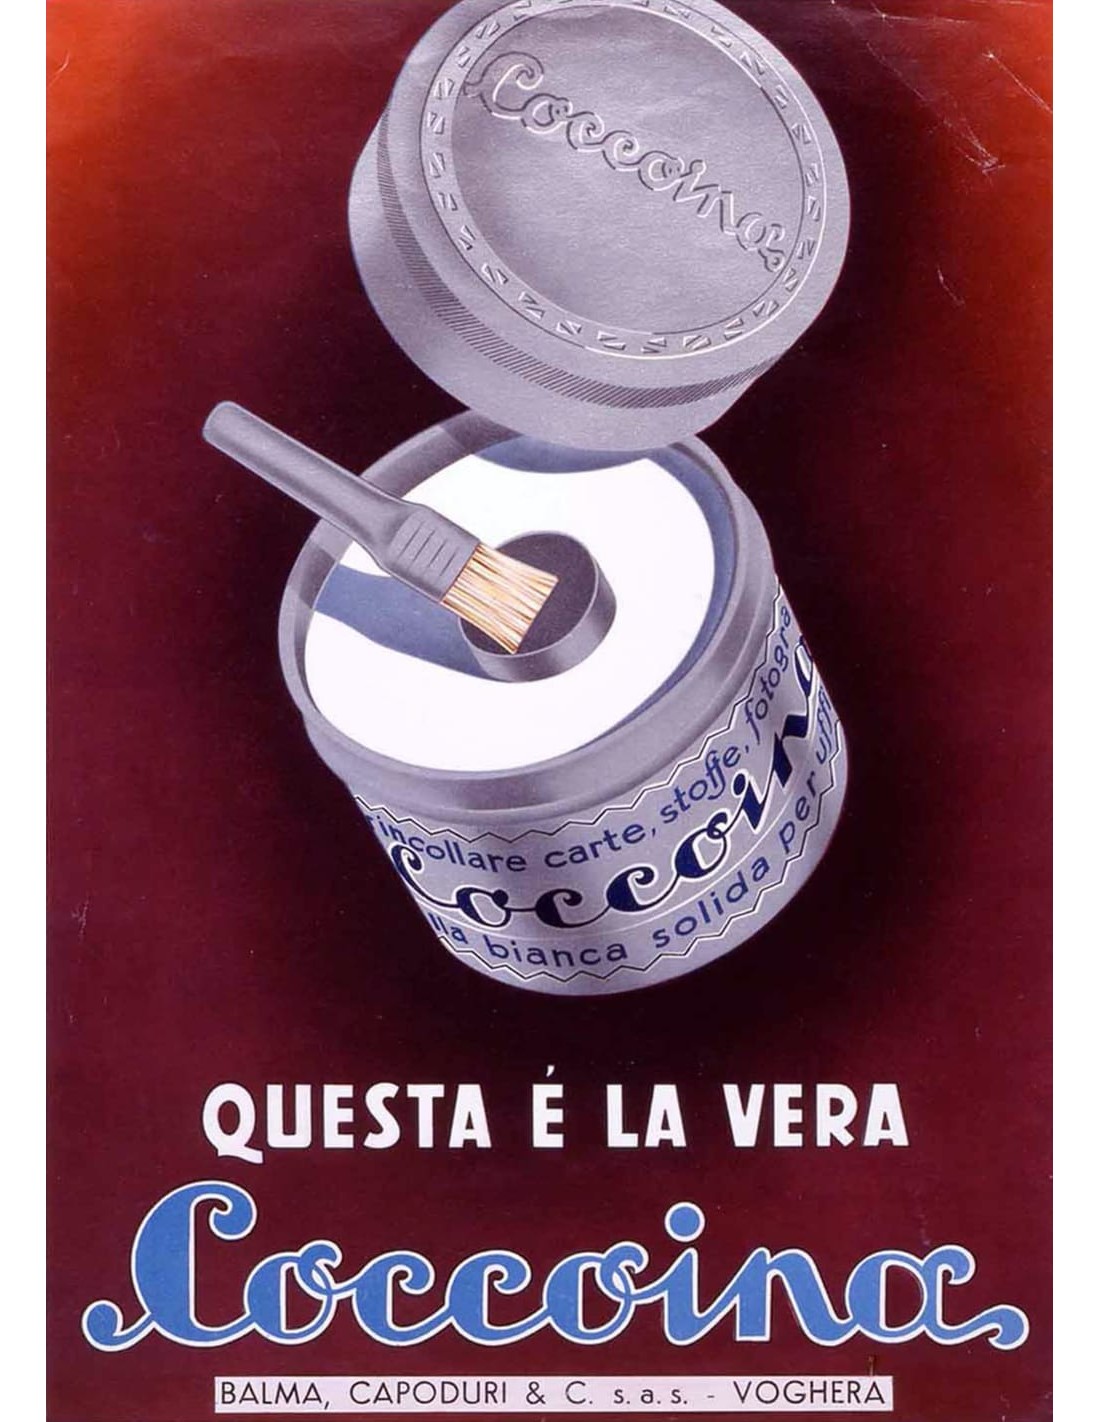 Senza scadenza, confezioni dell'intramontabile packaging made in Italy  (dalla colla Coccoina al Crystal Ball)